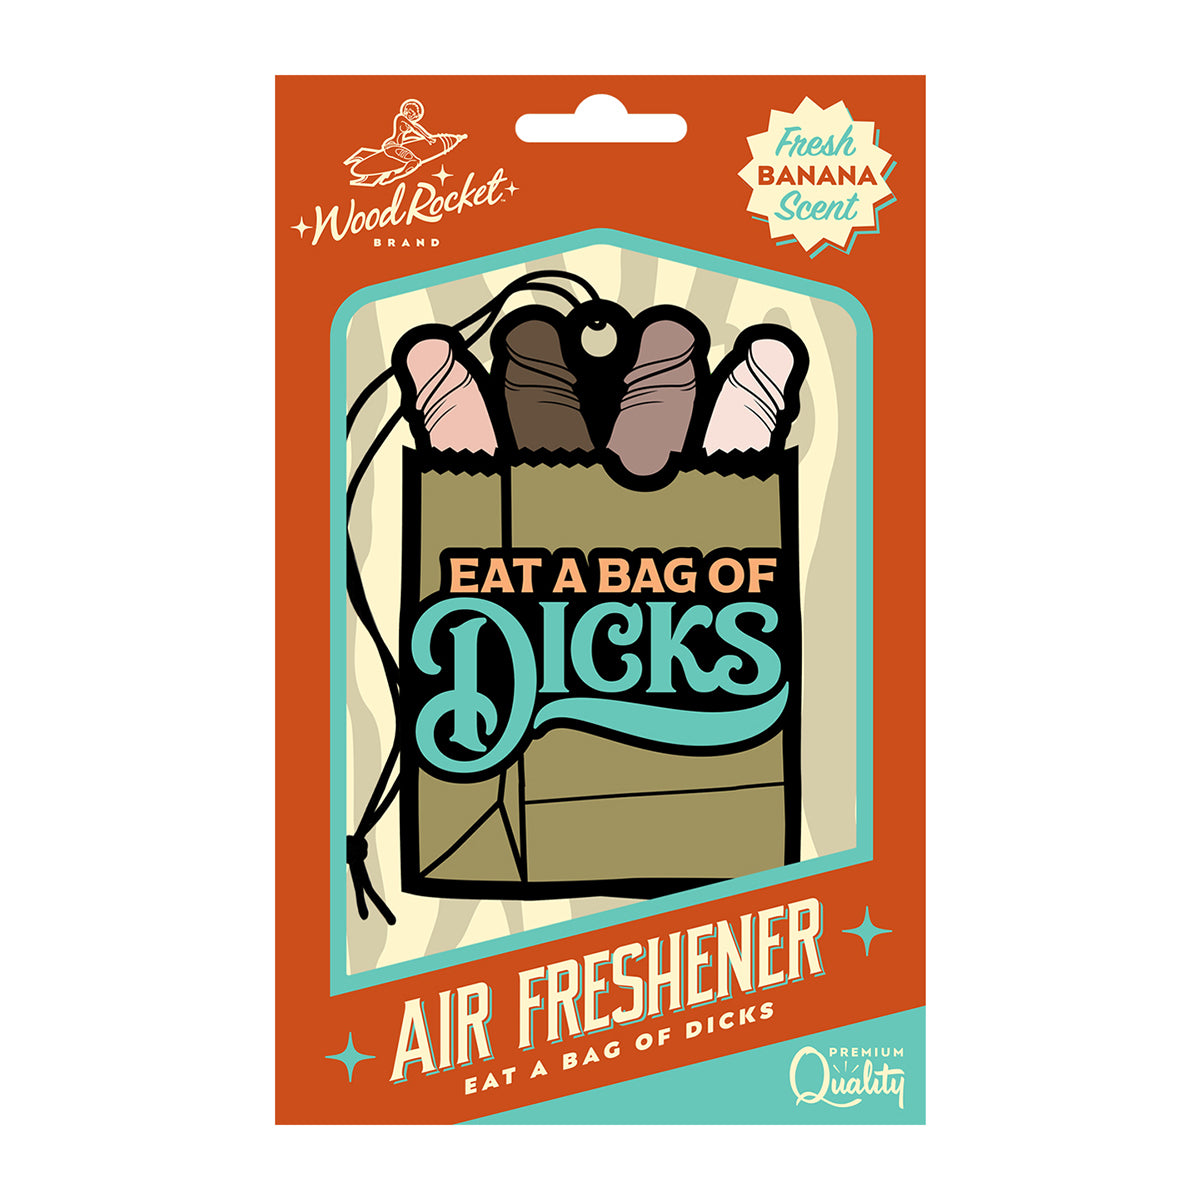 Wood Rocket Air Freshener Bag of Dicks